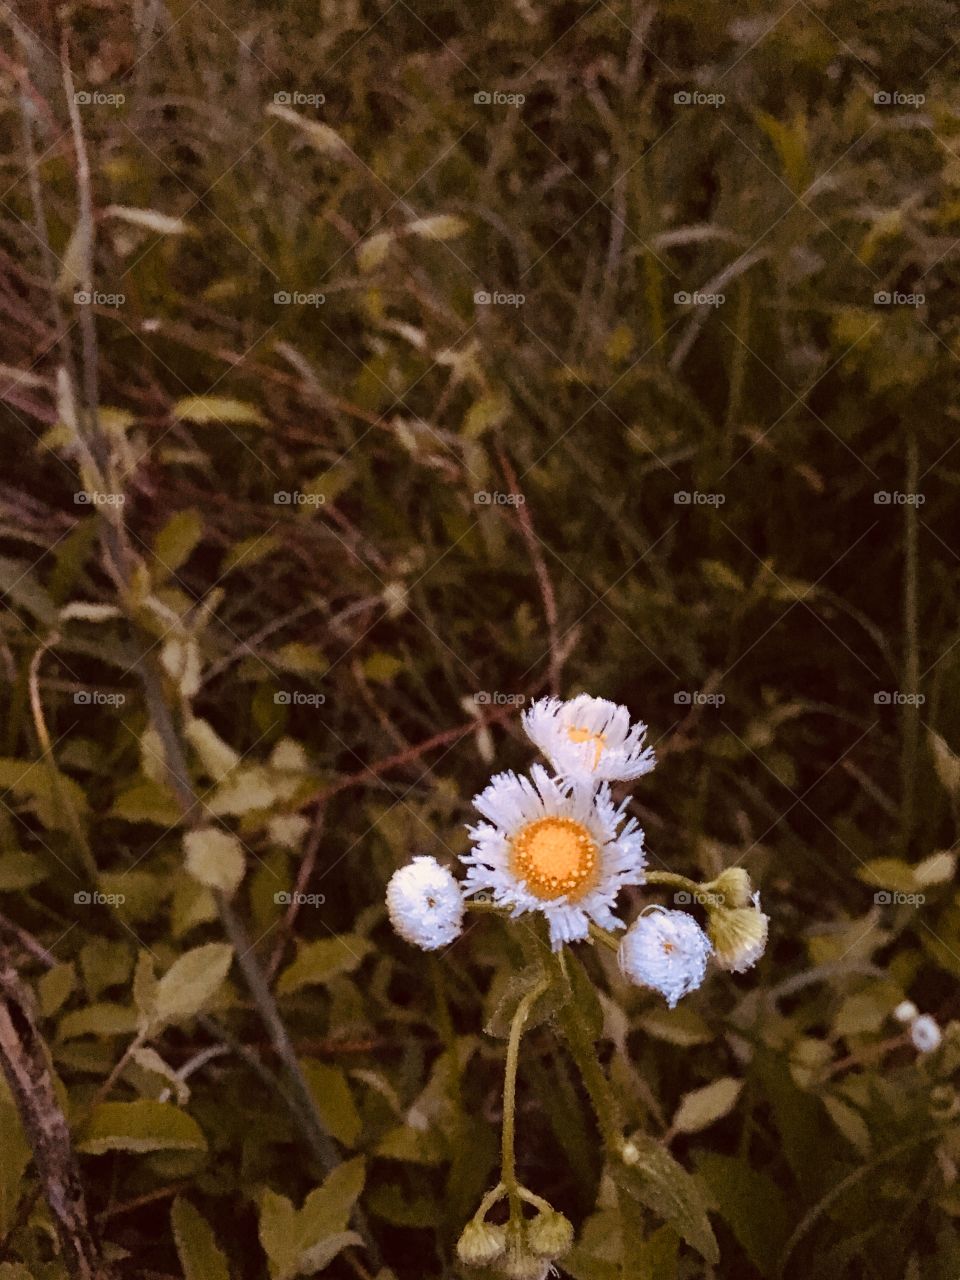 Springtime Wildflowers in Kentucky 